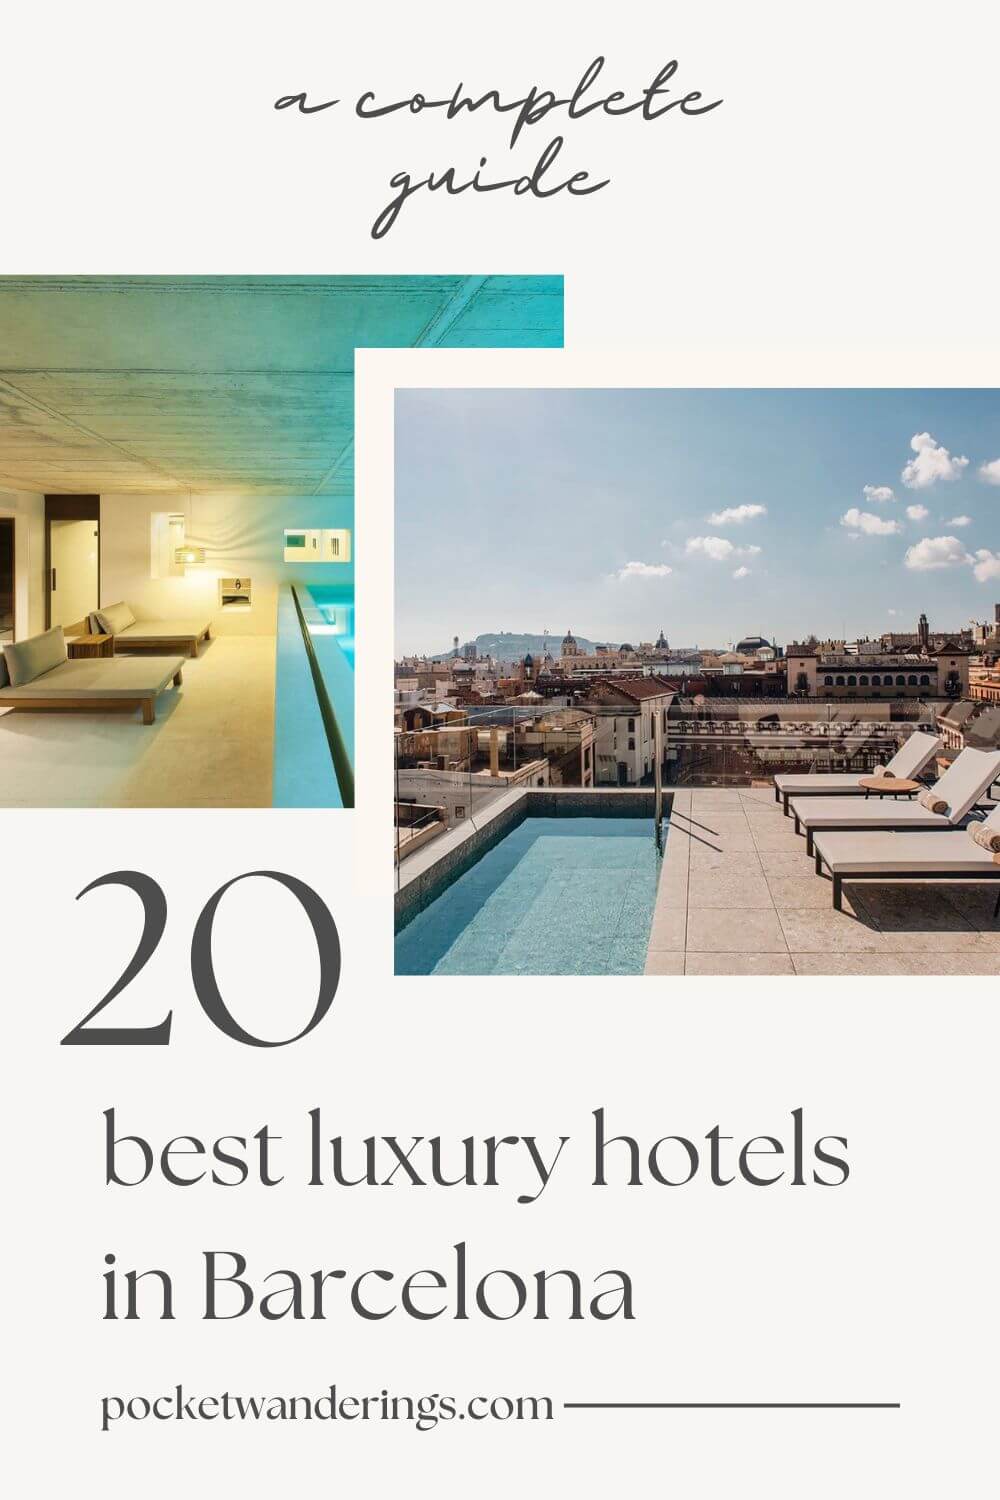 20 luxury hotels in Barcelona